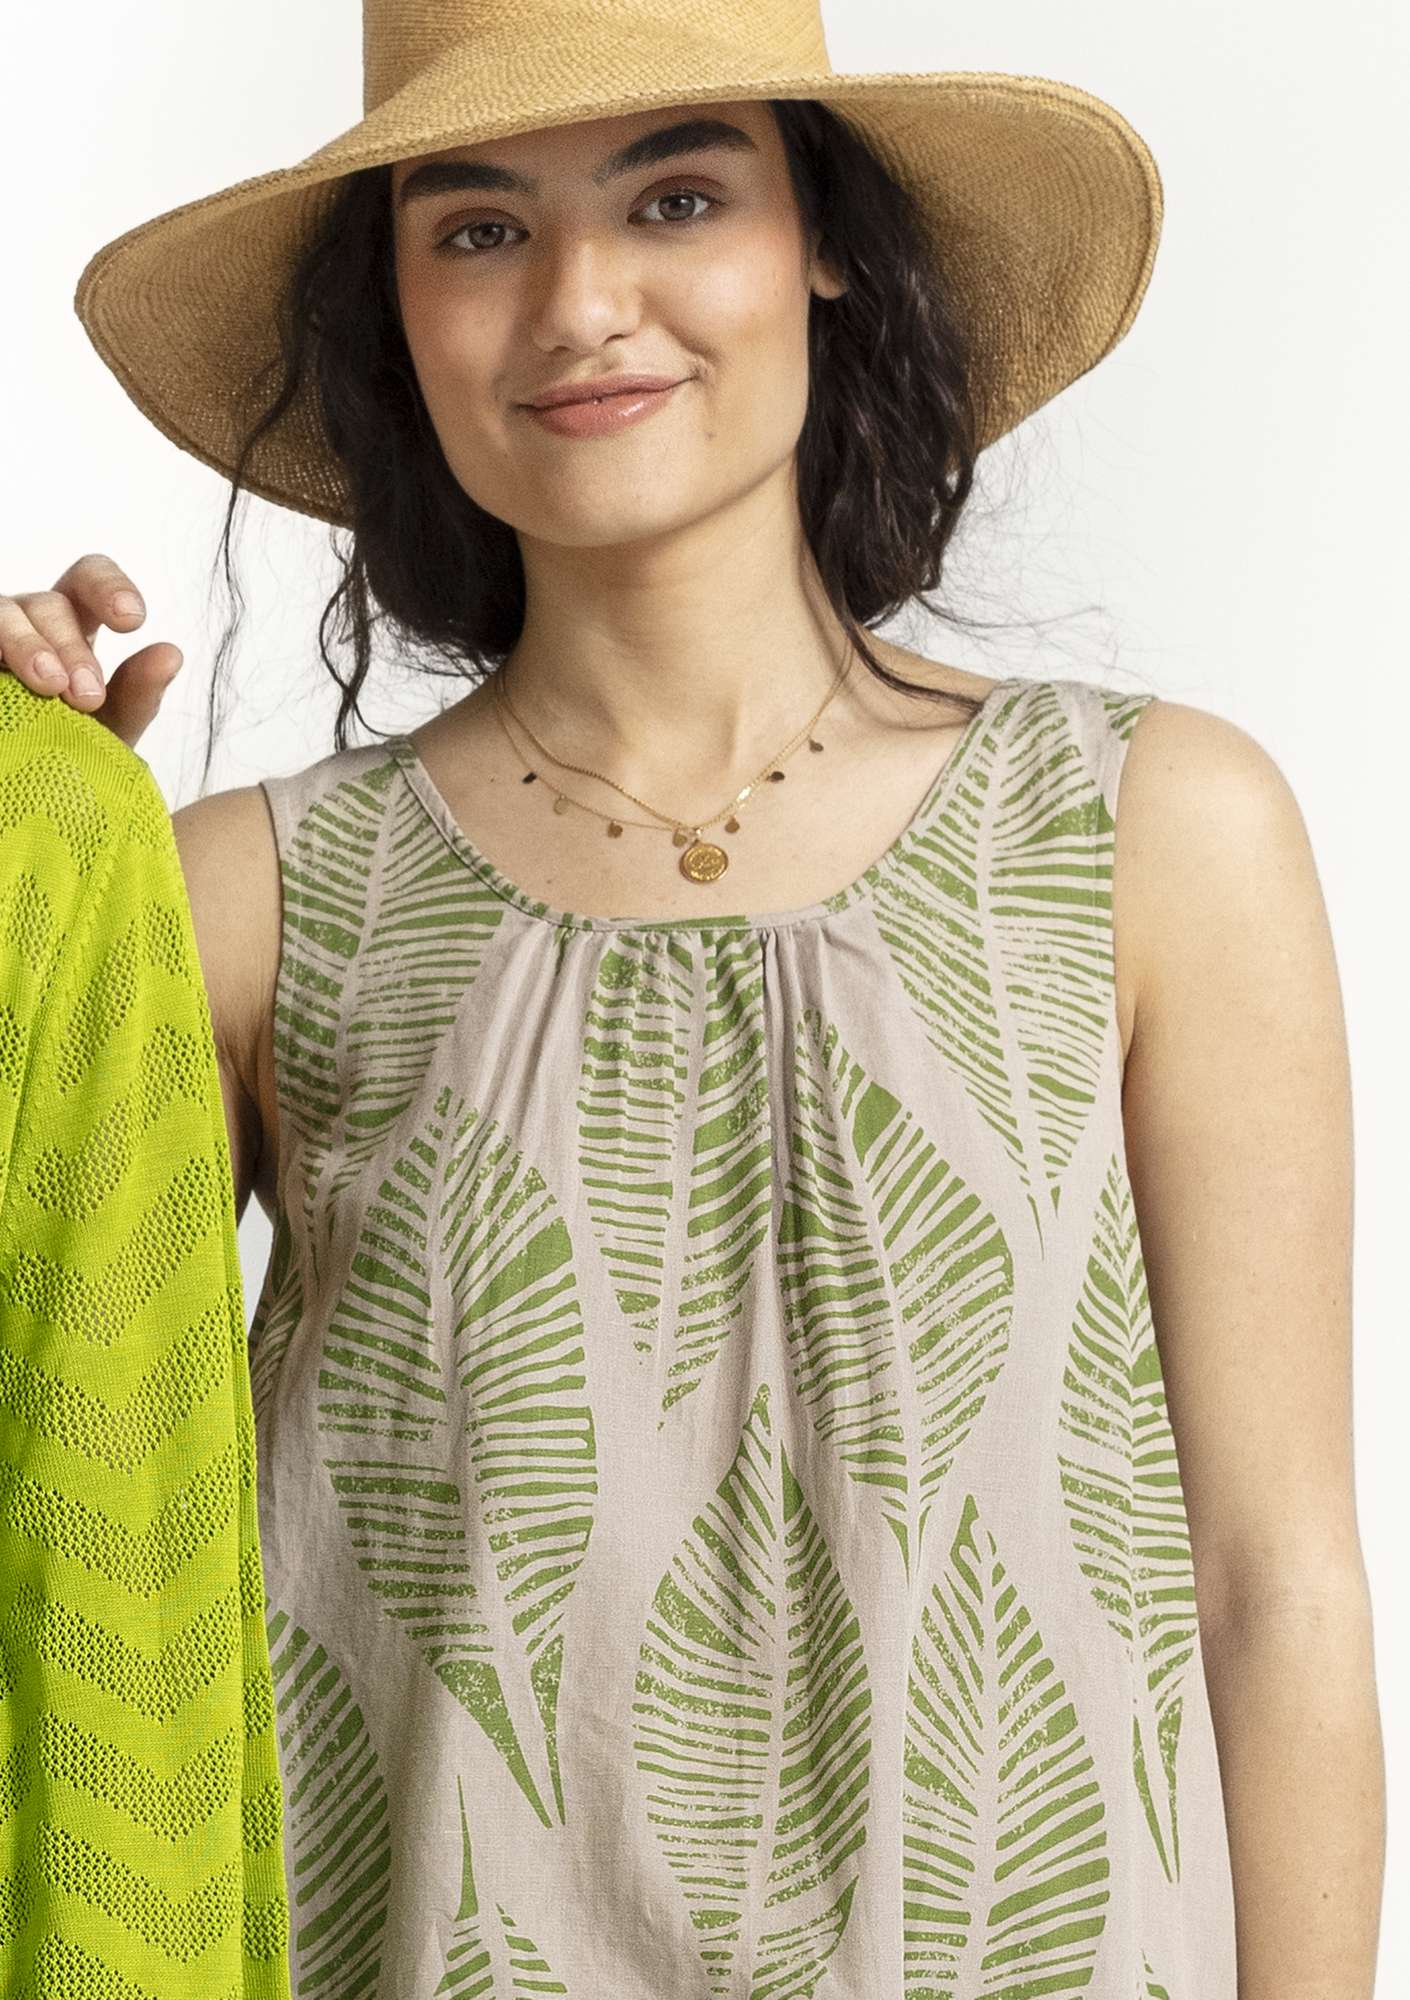 Vevd kjole «Decor» i økologisk bomull/lin naturmelert thumbnail